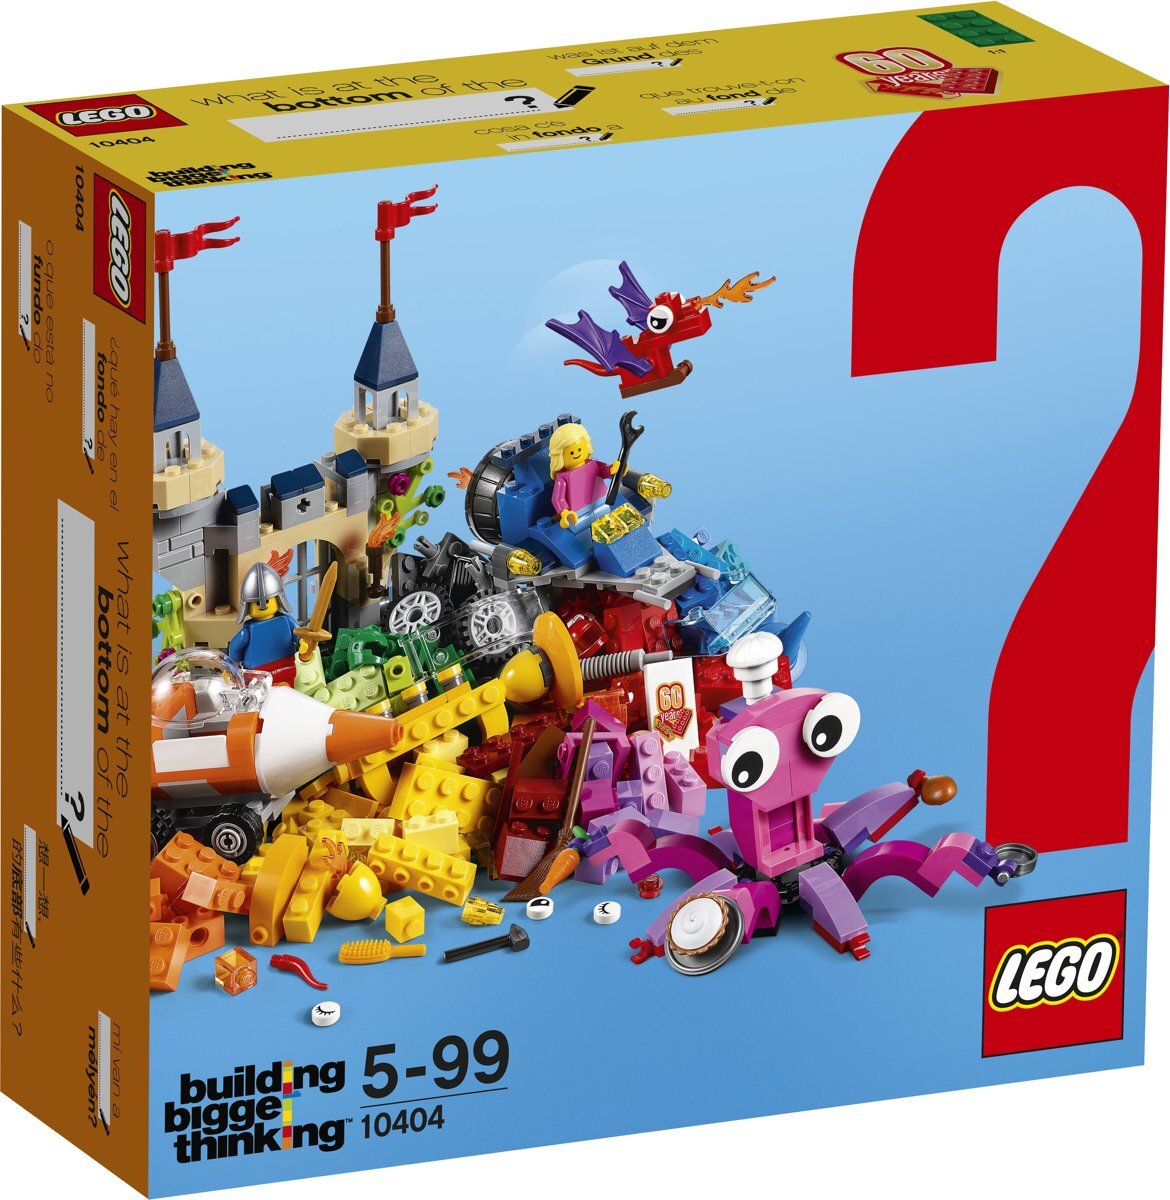 lego Special Edition Sets De Bodem van de Oceaan - 10404 Stimuleer de creativiteit van je kind met deze special edition set